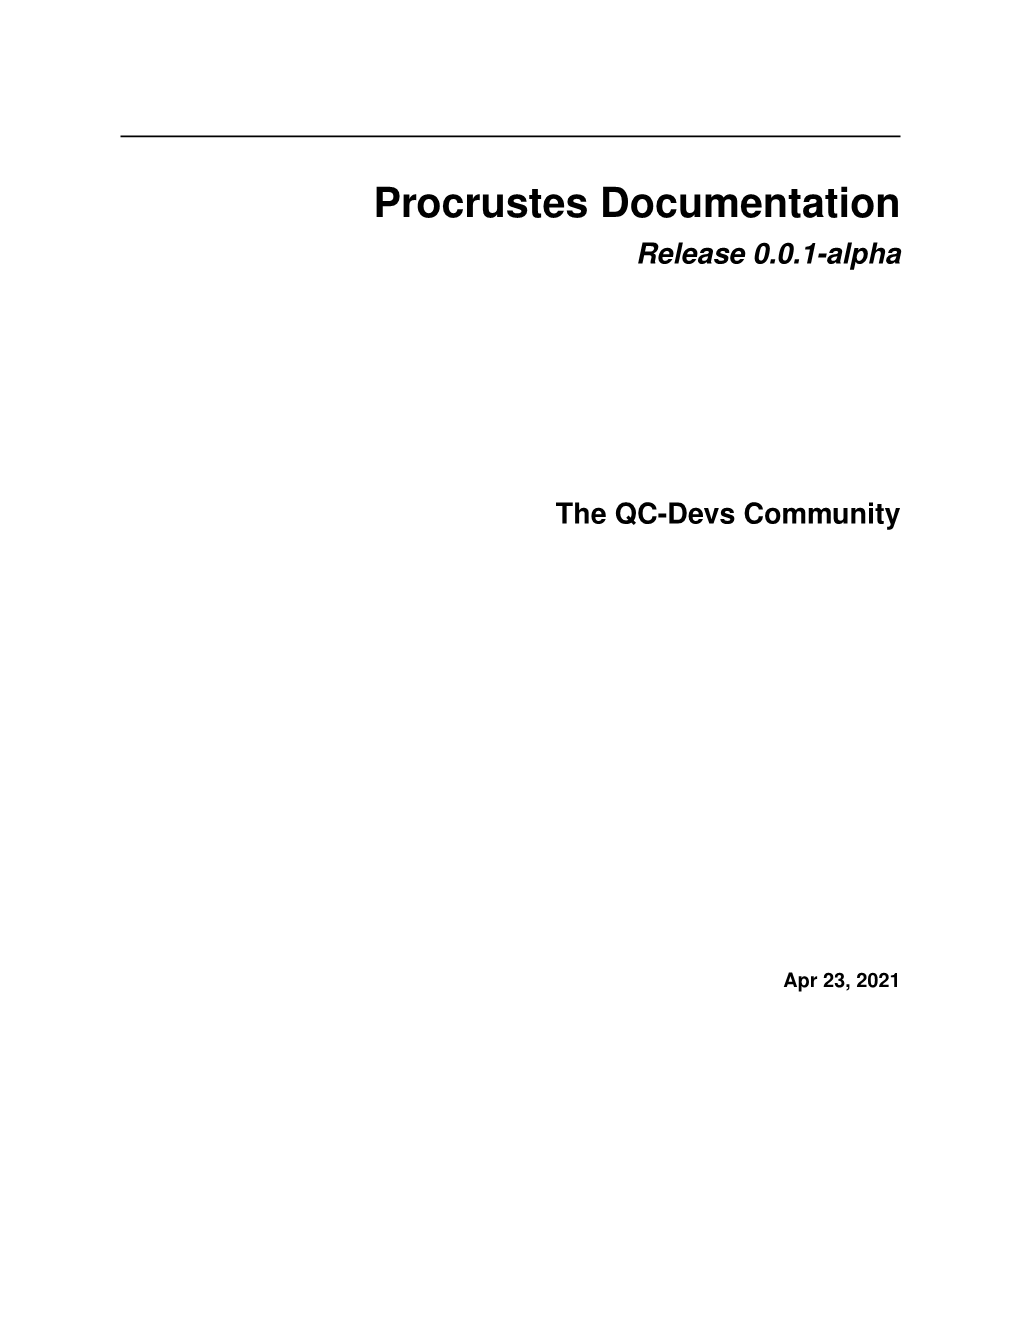 Procrustes Documentation Release 0.0.1-Alpha